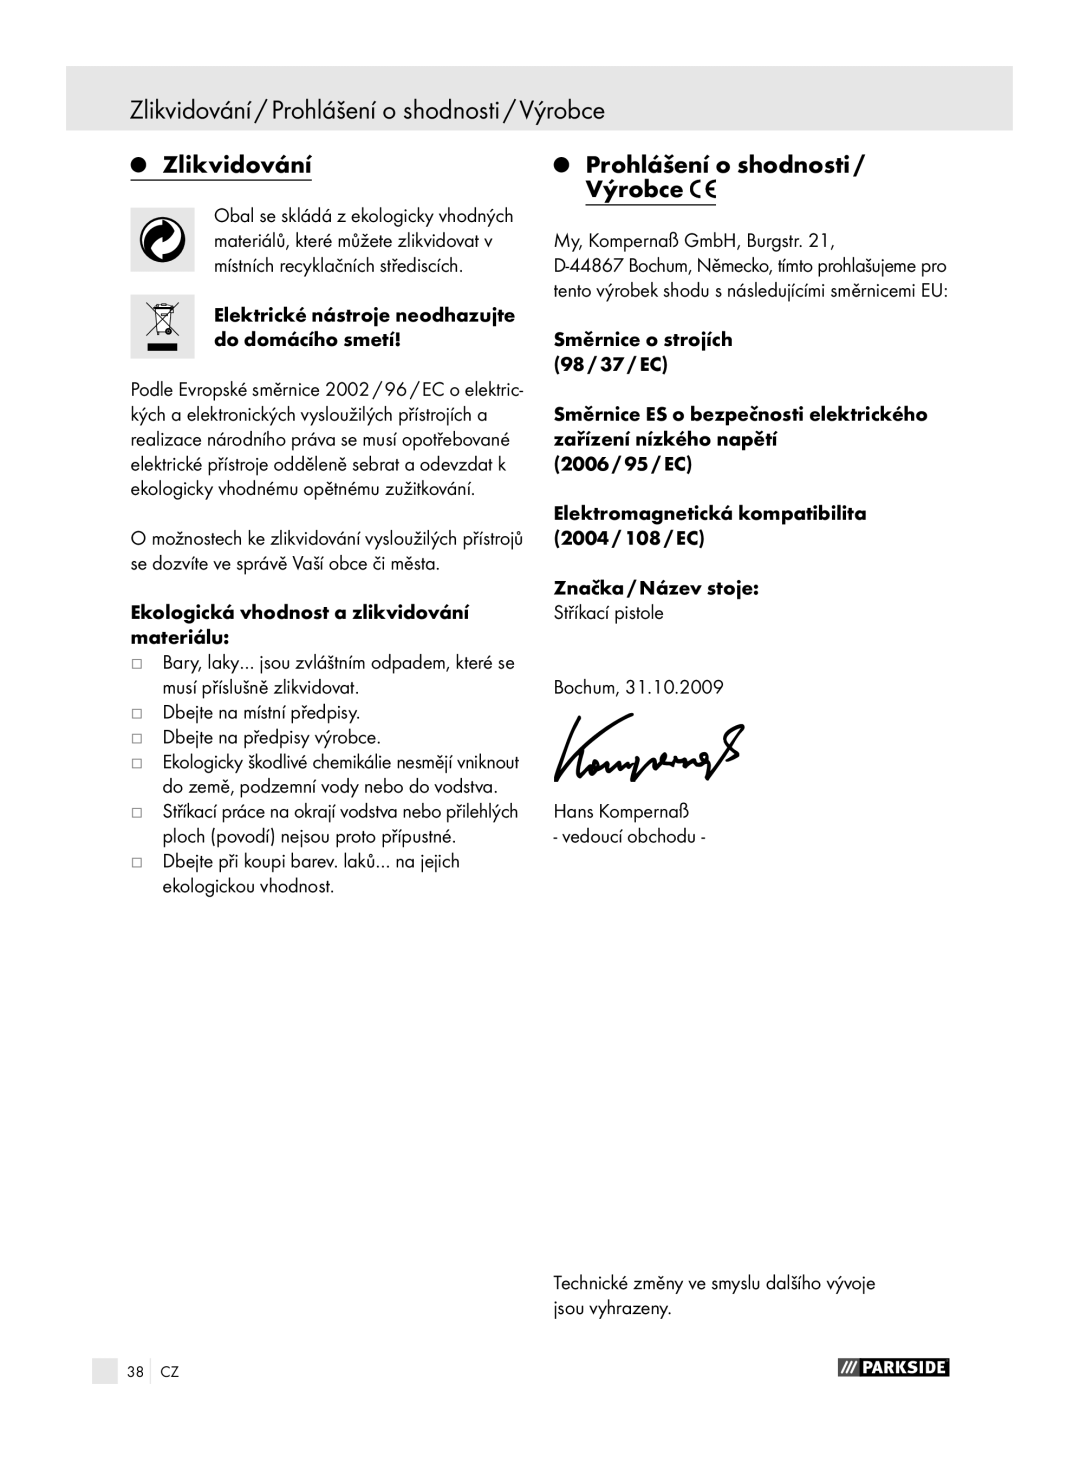 Parkside PFSP 100 manual Zlikvidování / Prohlášení o shodnosti / Výrobce, Prohlášení o shodnosti / Výrobce 